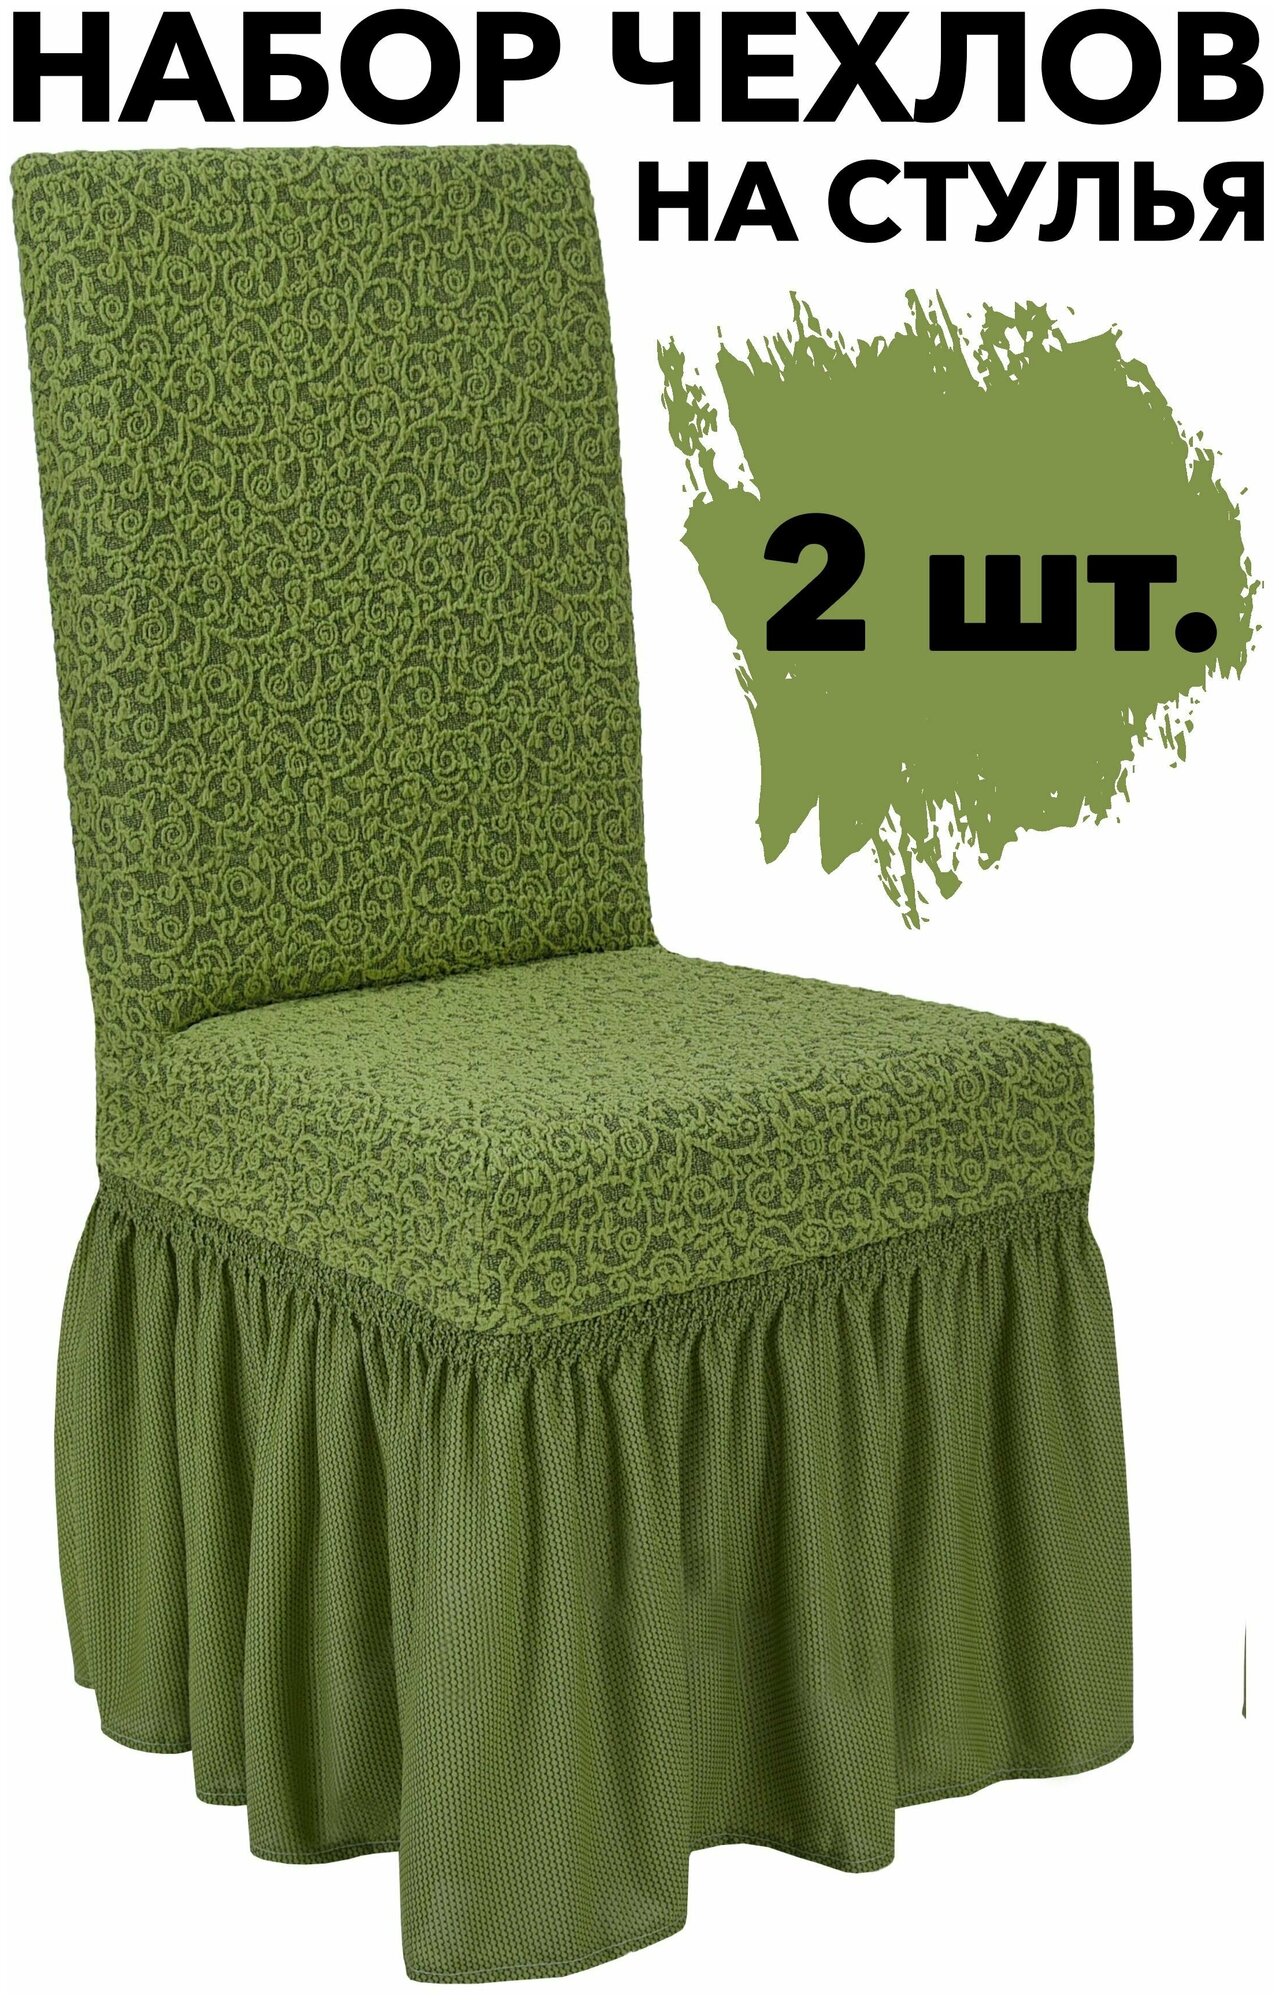 Чехлы на стулья со спинкой 2 шт набор на кухню универсальные с оборкой Venera, цвет Зеленый светлый